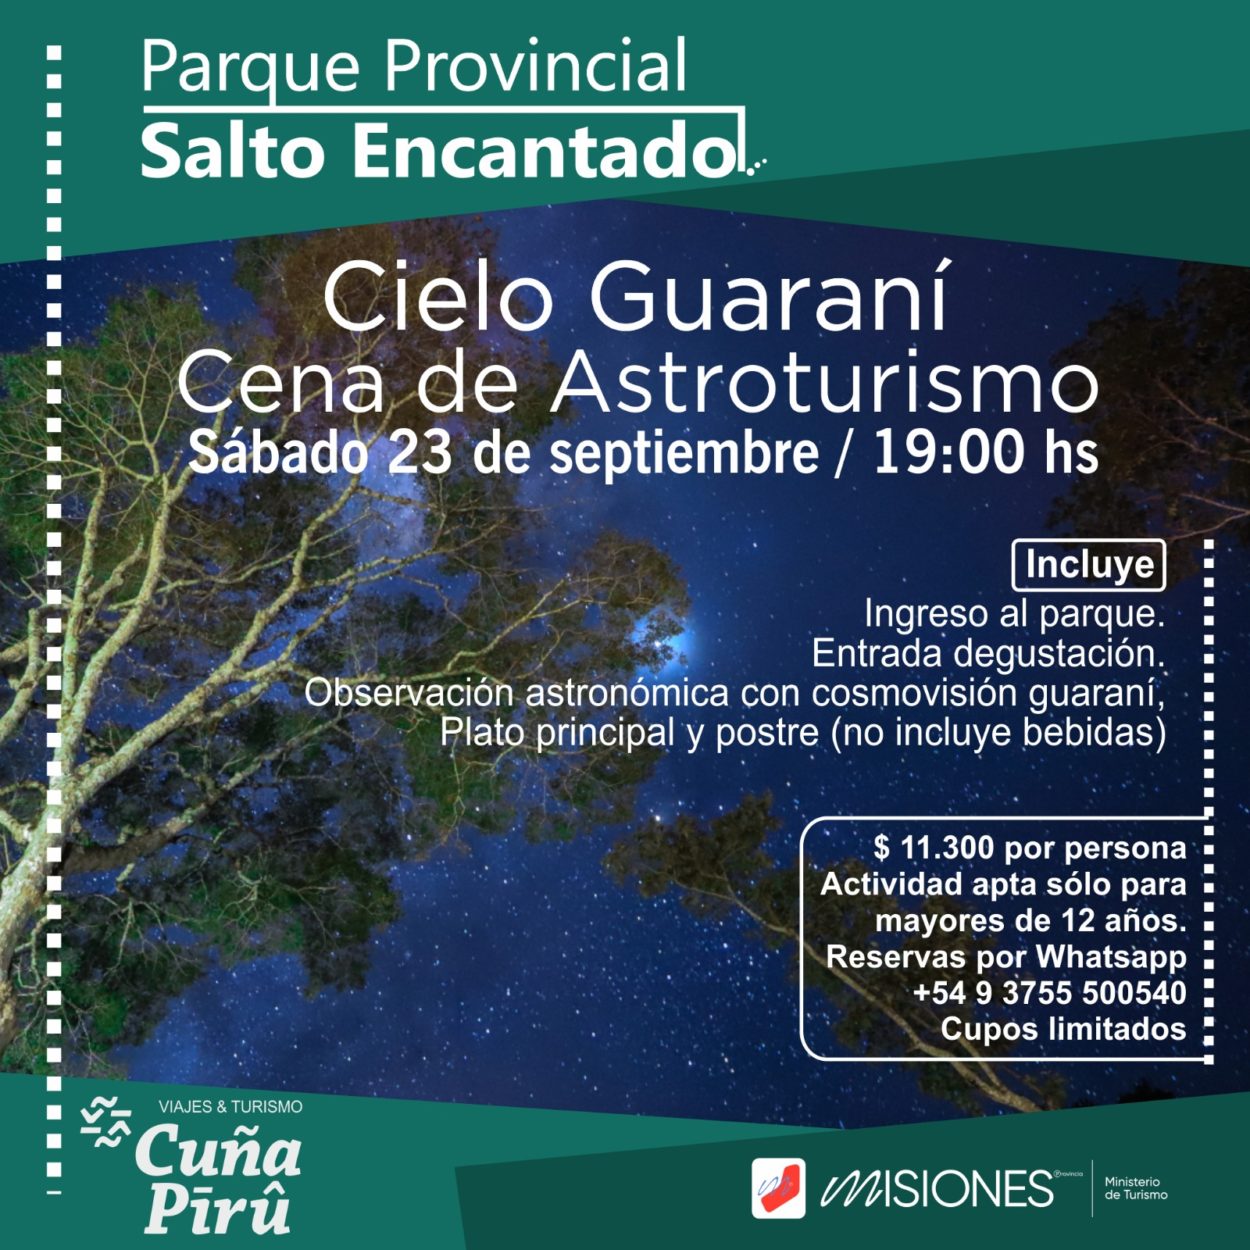 Cielo Guaraní - Cena de Astroturismo en el Parque Salto Encantado imagen-2